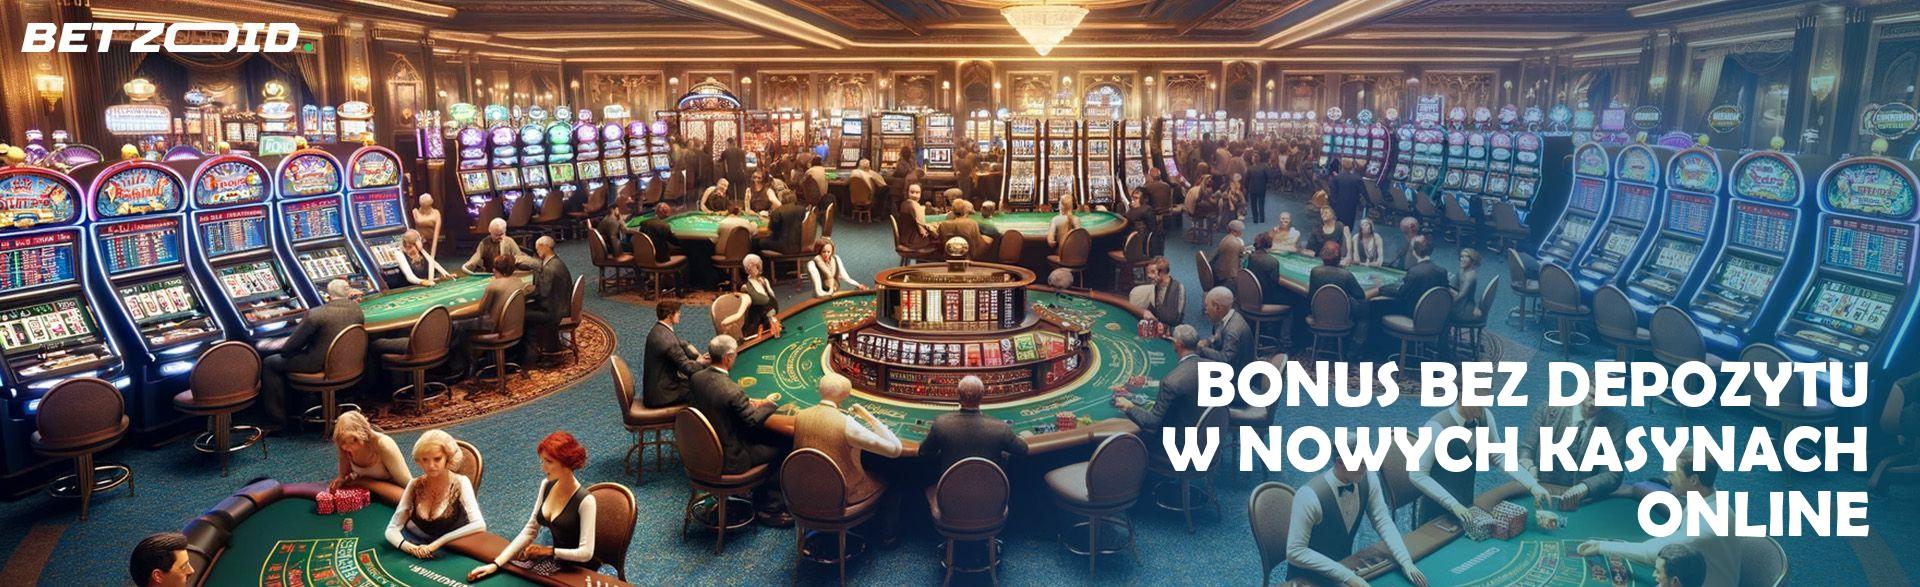 Wszystko o wyplatach w kasynie online LVBet w Polsce